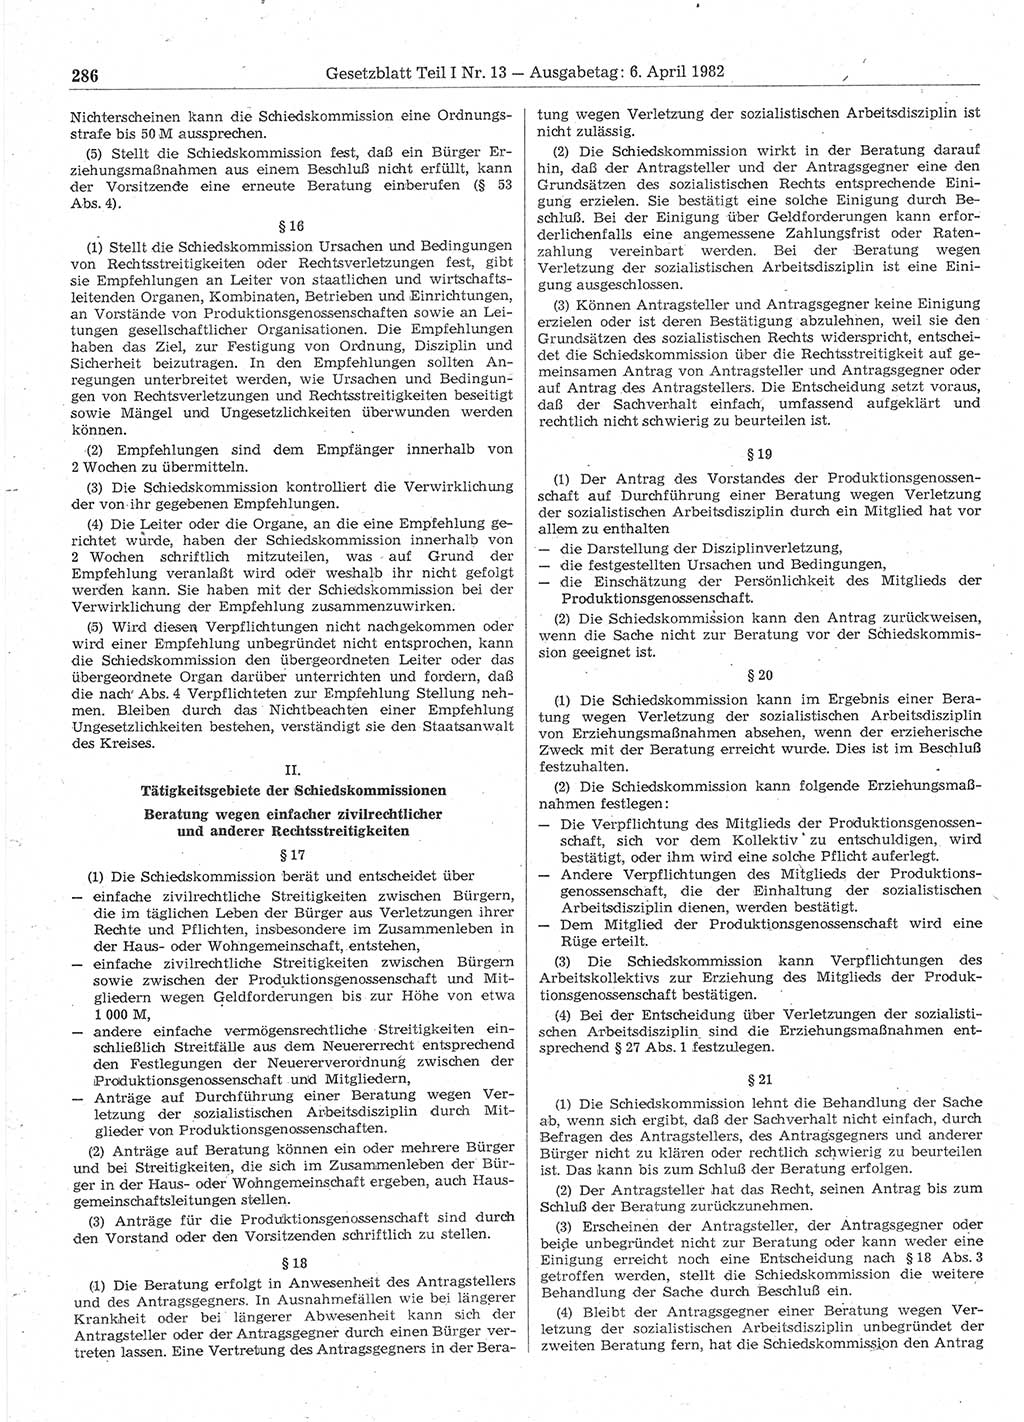 Gesetzblatt (GBl.) der Deutschen Demokratischen Republik (DDR) Teil Ⅰ 1982, Seite 286 (GBl. DDR Ⅰ 1982, S. 286)